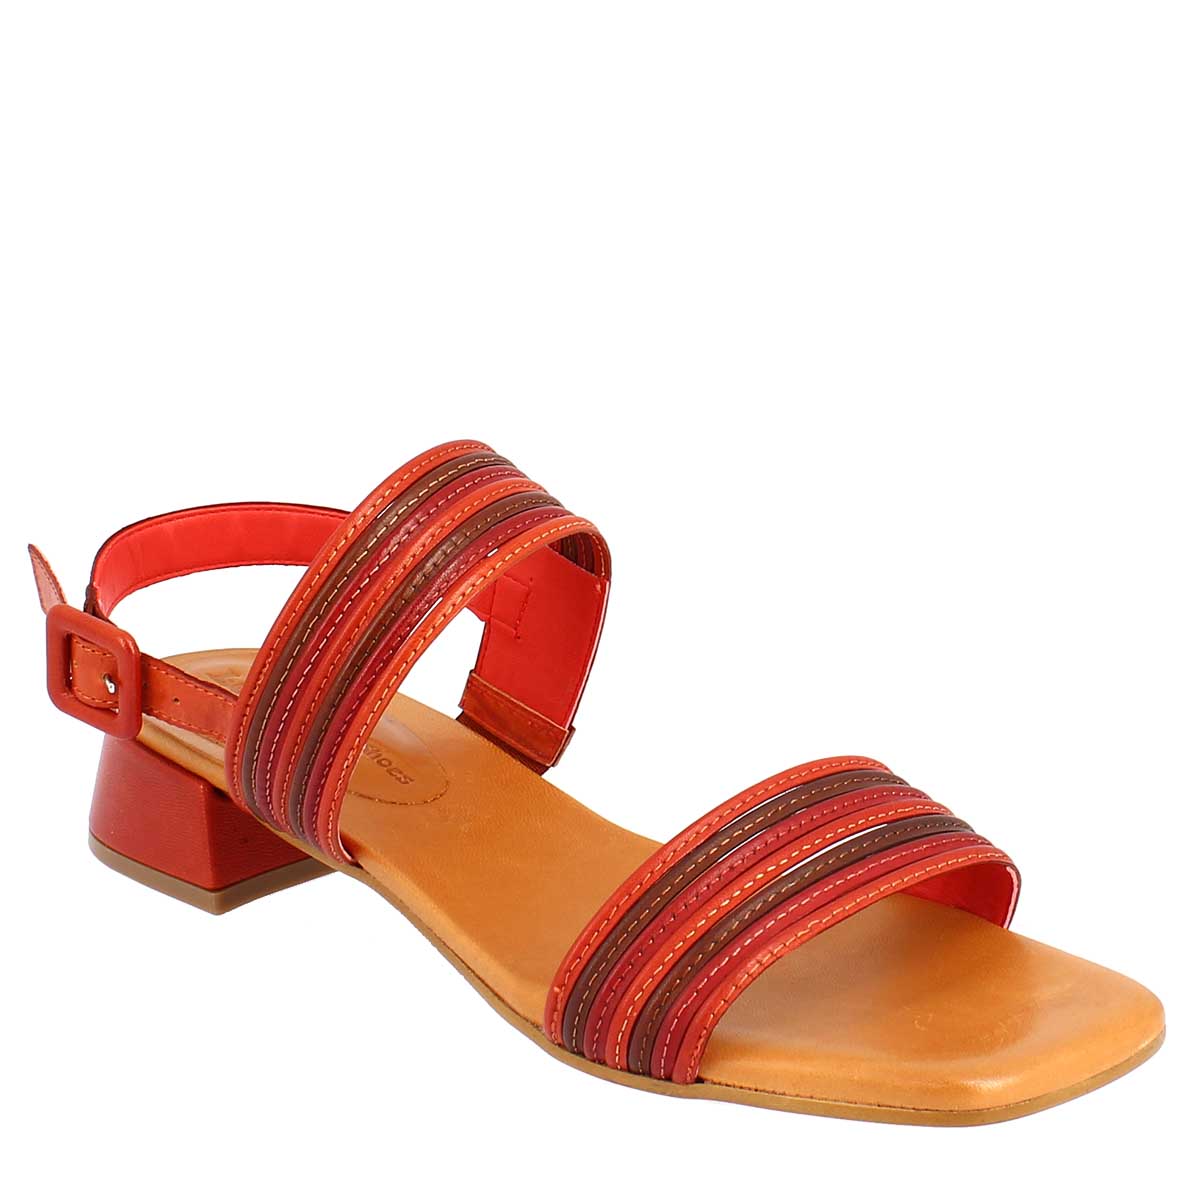 Sandali artigianali da donna slingback in pelle color rosso, arancio e cognac.